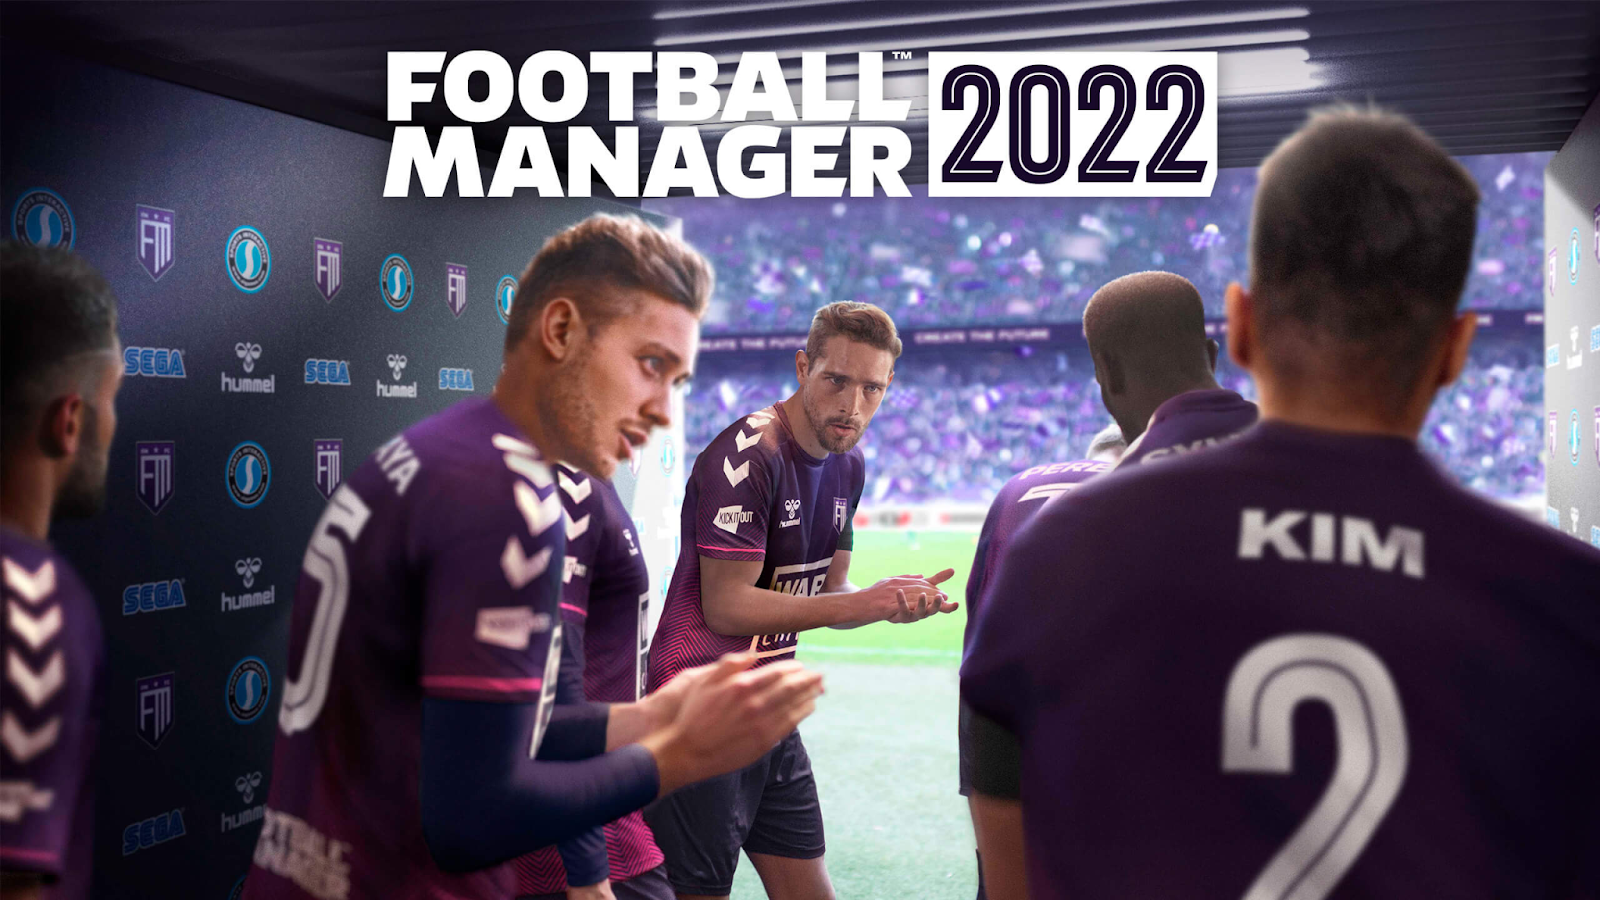 Tải ngay game bóng đá cực hay Football Manager 2022 đang giảm giá trên Steam 1234